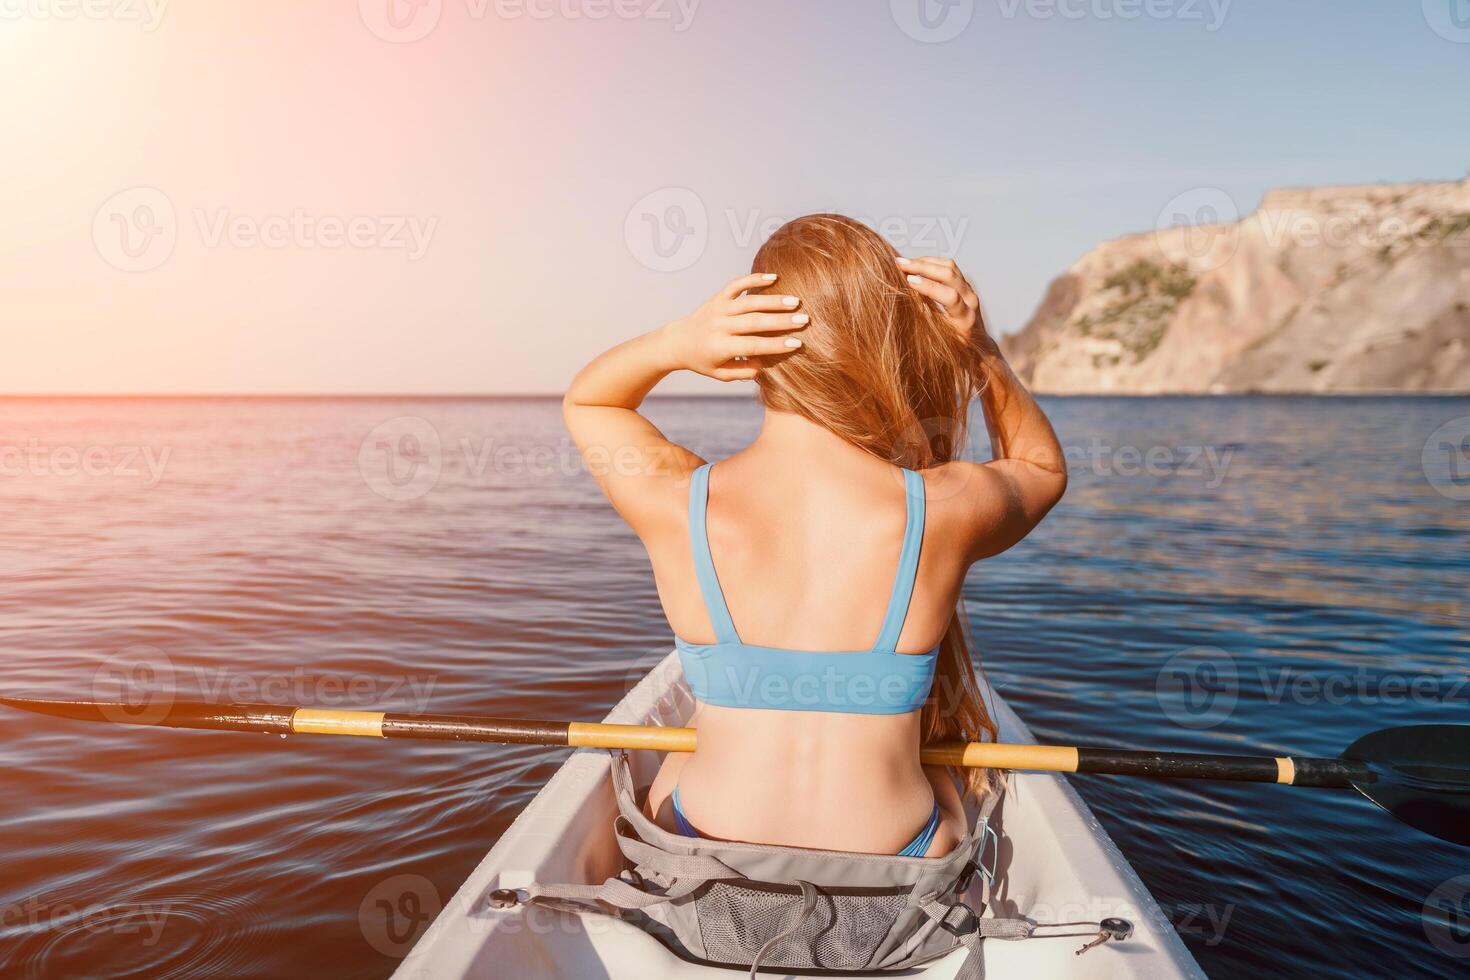 Frau im Kajak zurück Sicht. glücklich jung Frau mit lange Haar schwebend im Kajak auf Ruhe Meer. Sommer- Urlaub Ferien und heiter weiblich Menschen entspannend haben Spaß auf das Boot. foto